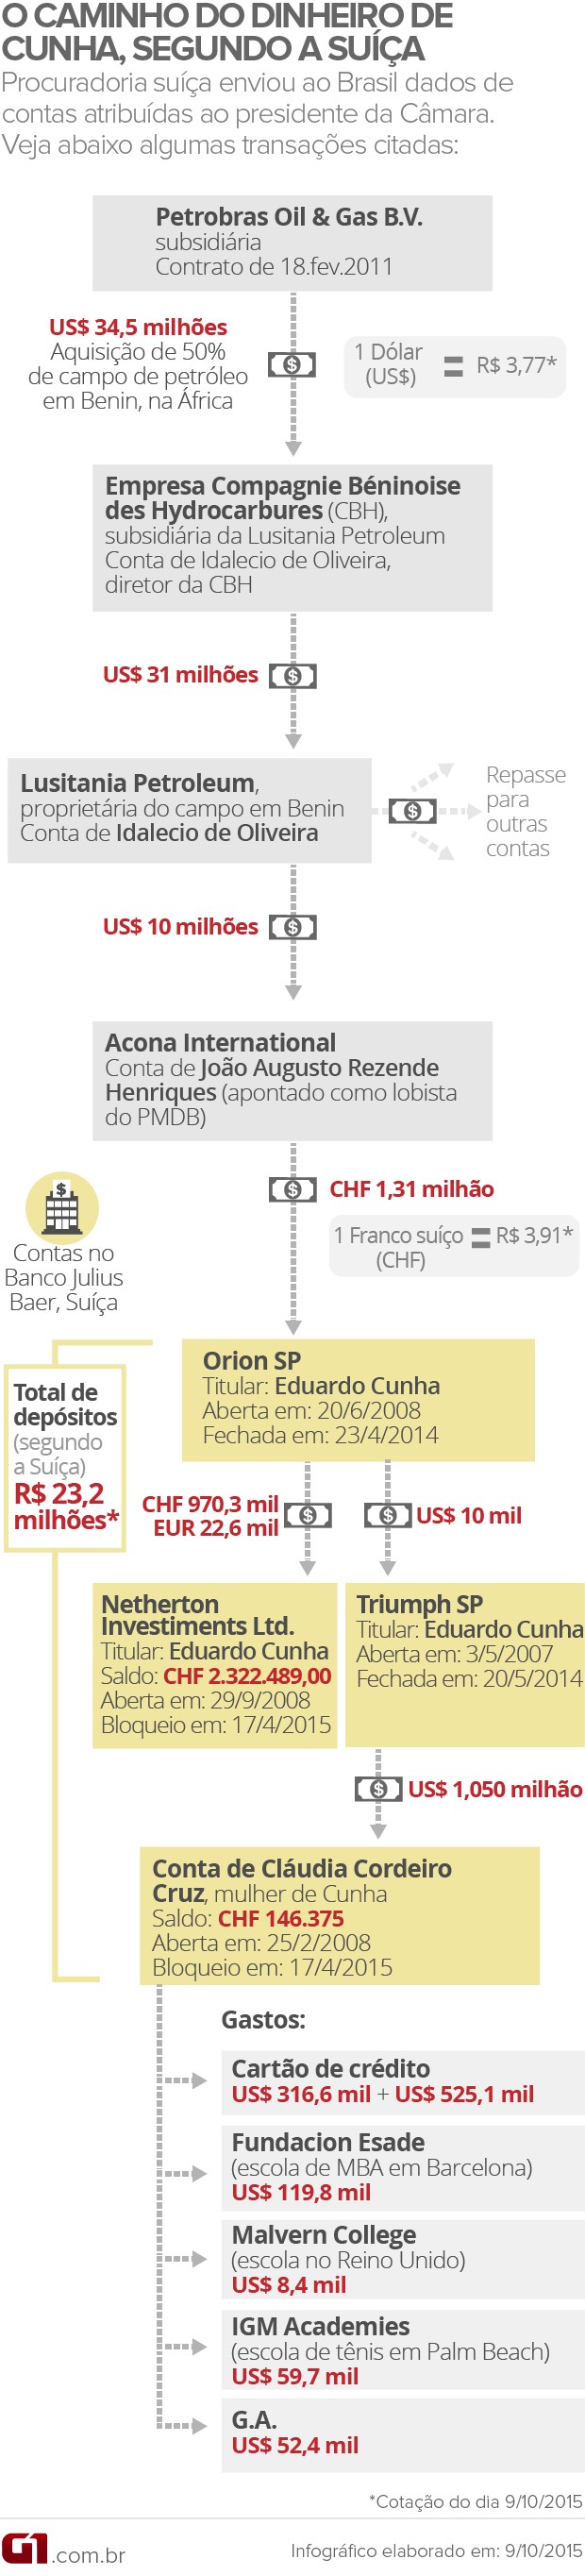 O caiminho do dinheiro atribuído a Eduardo Cunha (VALE ESTA 2)